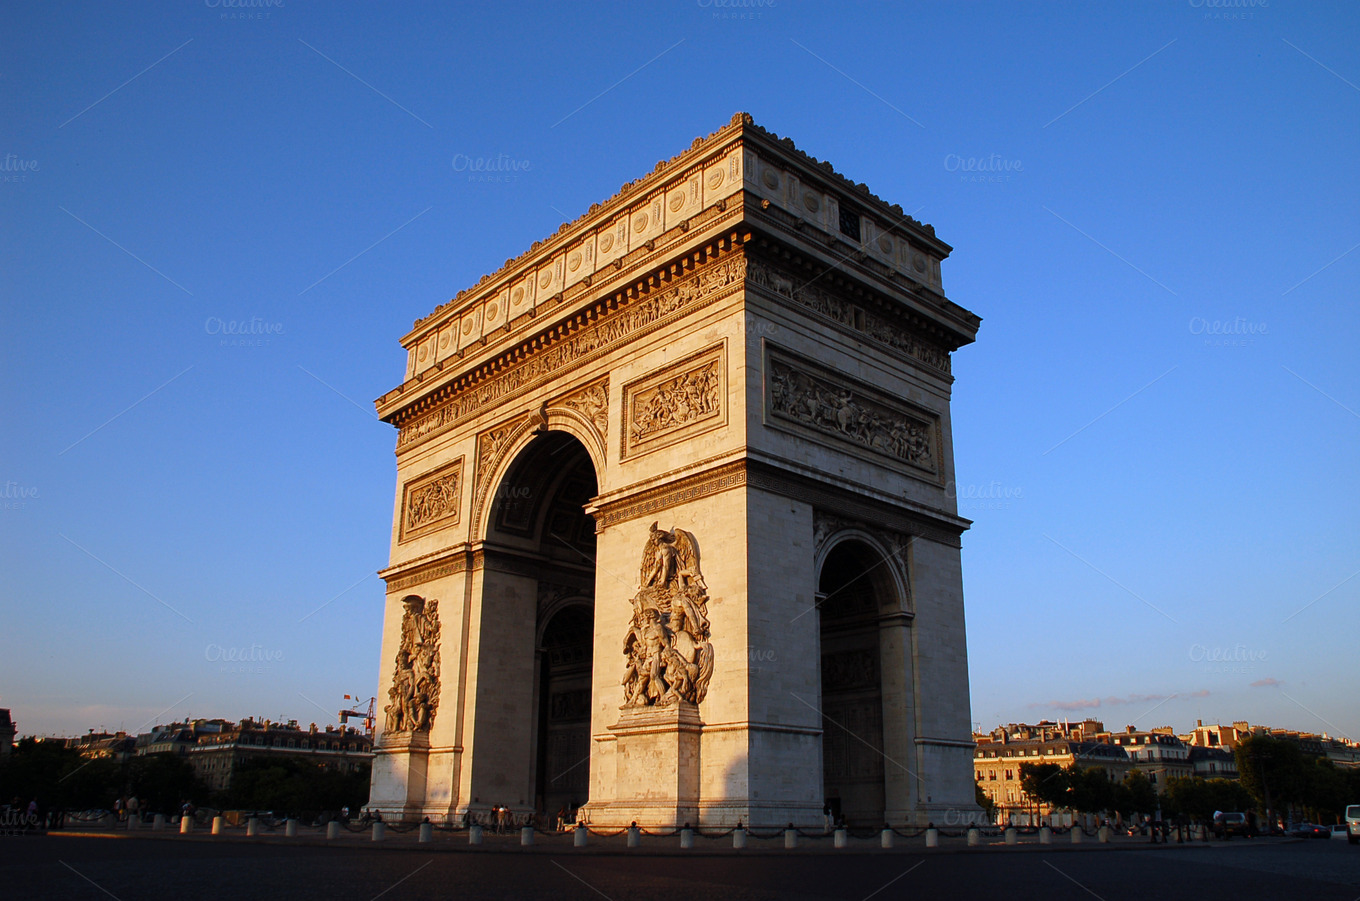 Arc de triomphe, Paris ~ Architecture Photos on Creative Market